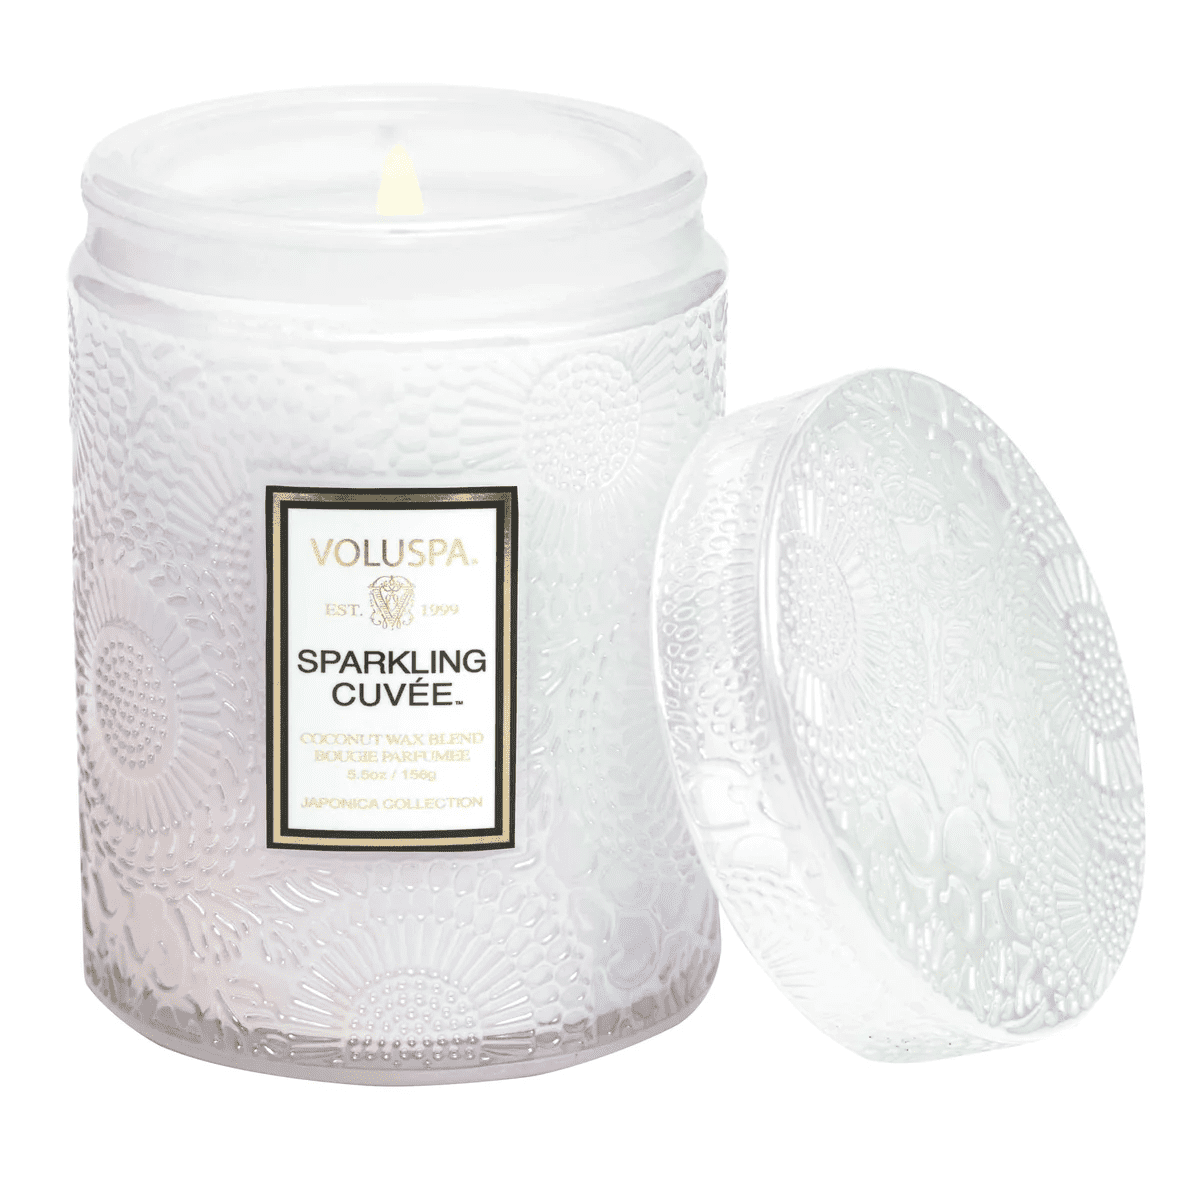 Sparkling Cuvee 5.5 oz. SM Jar | Voluspa | Iris Gifts & Décor